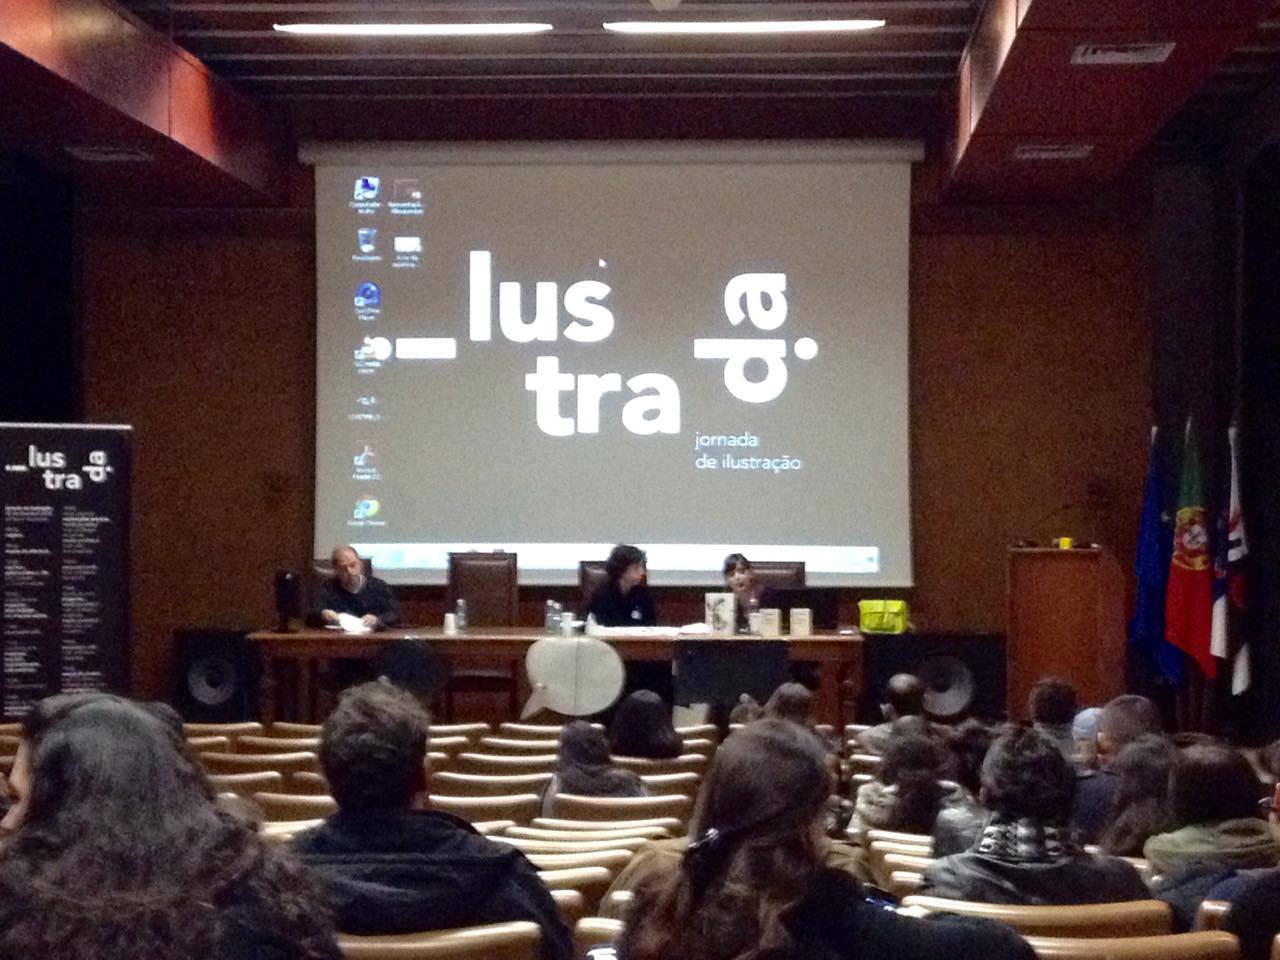 Na mesa estão Francisco Paiva (moderador), Cristina Salvador e a Ana Biscaia.                 

Foto tirada por: Catarina Moura.